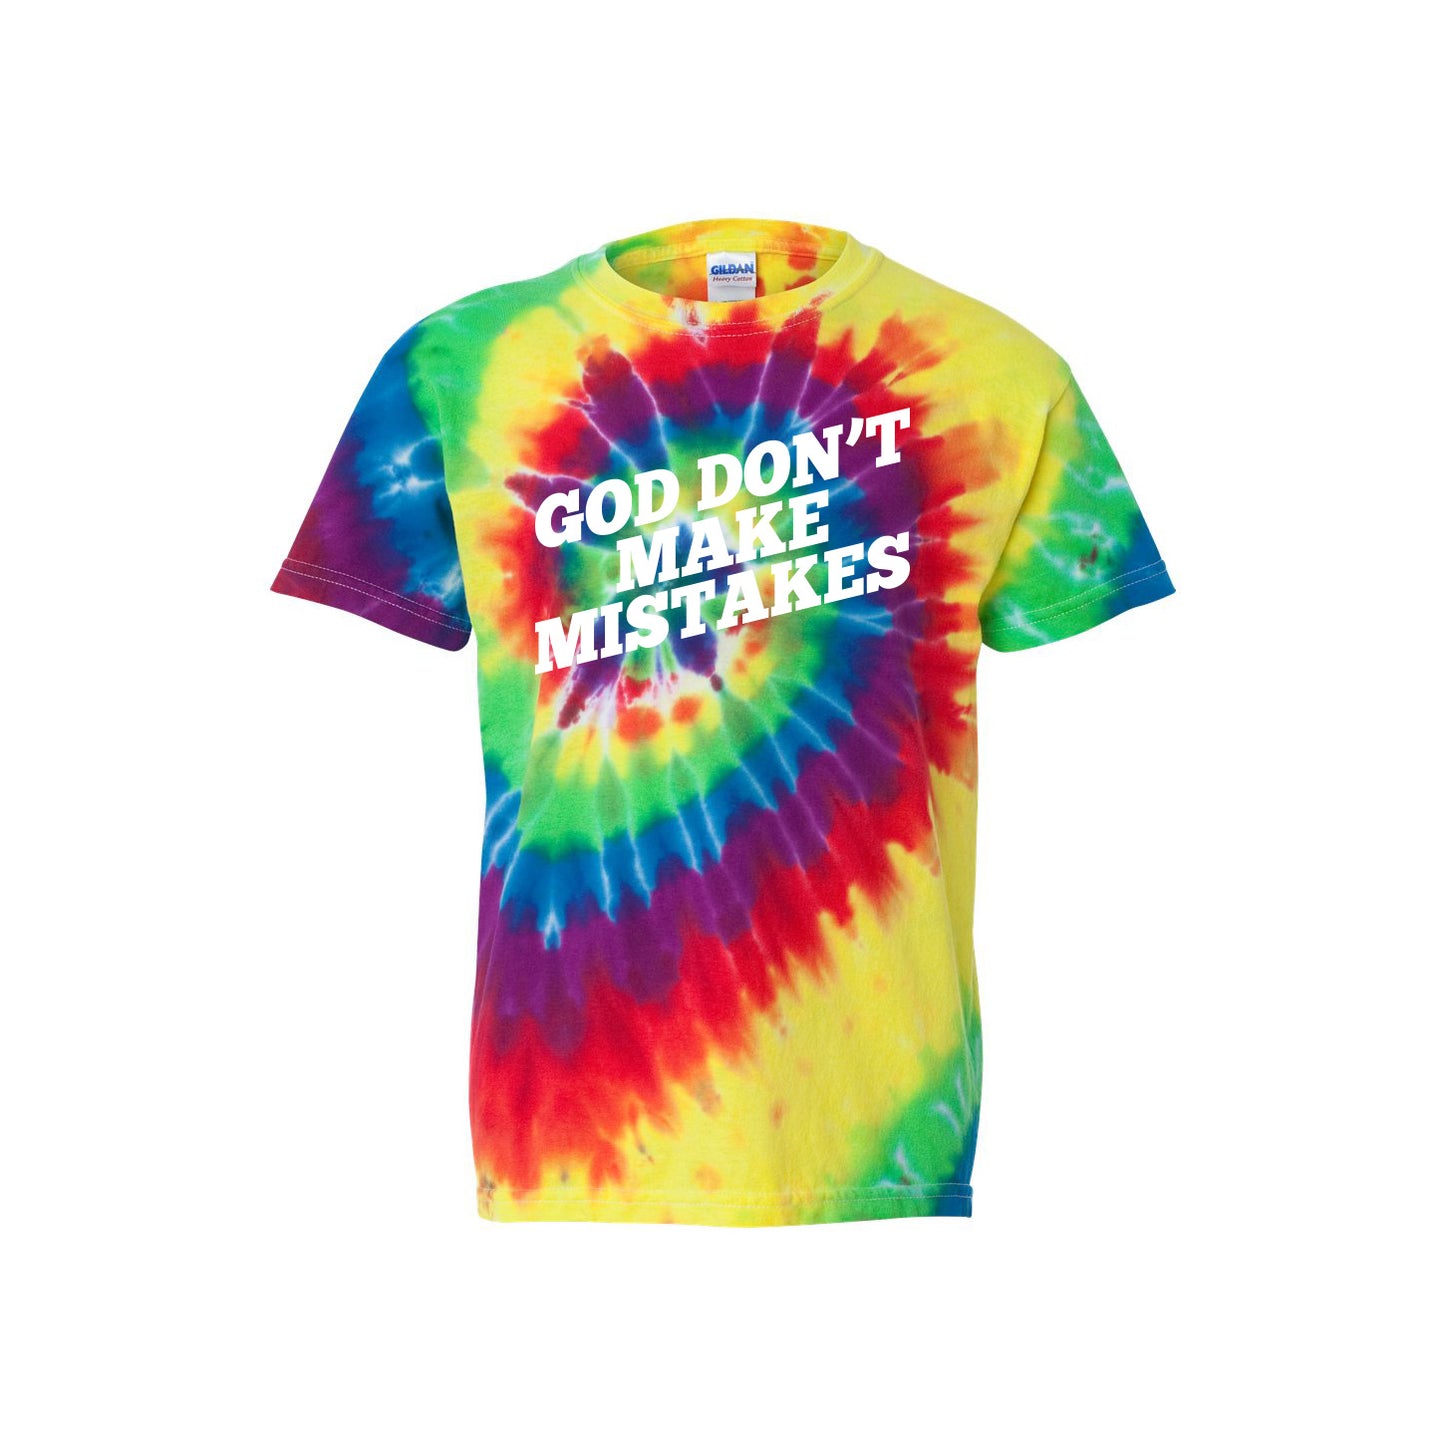 God Don't Make Mistakes (Tie-Dye) Kids T-shirt